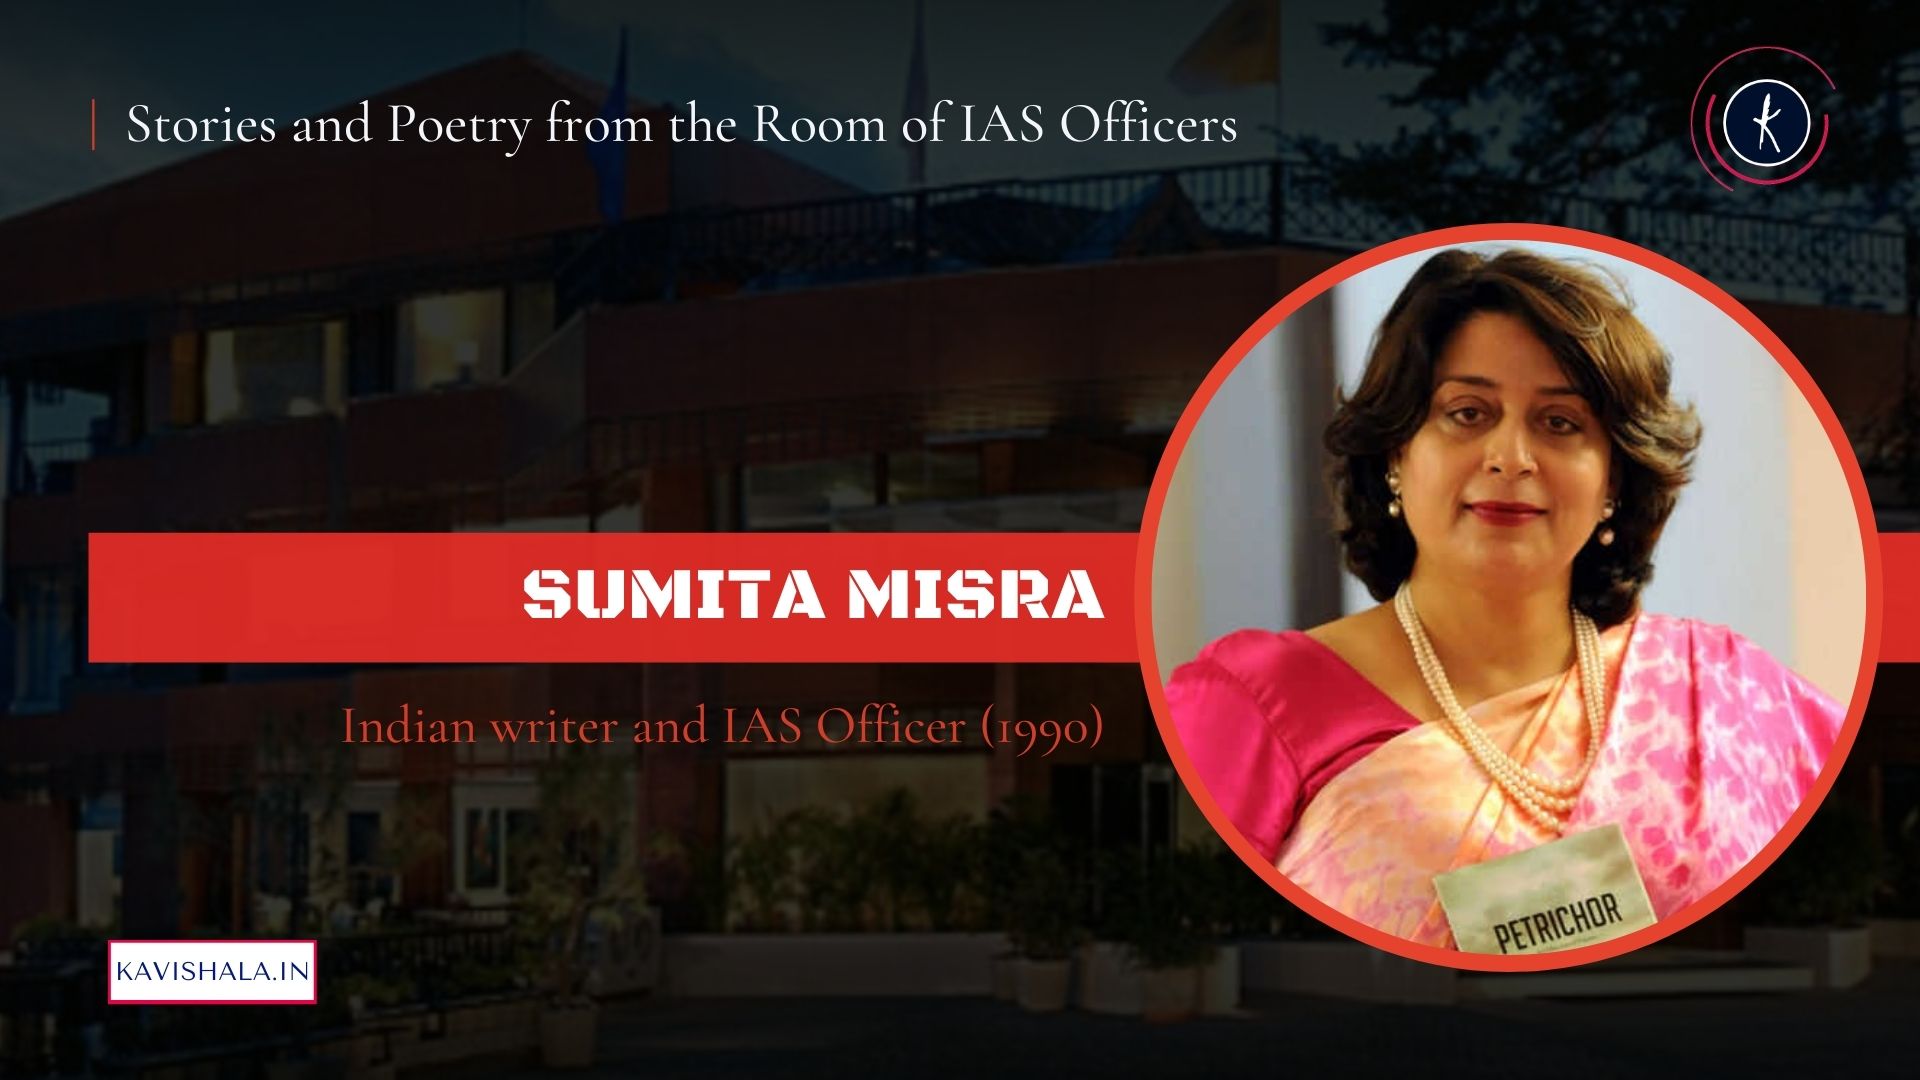 ज़िंदगी की राहें और दिल की मंजिले कब एक हुई हैं - सुमिता मिश्रा's image